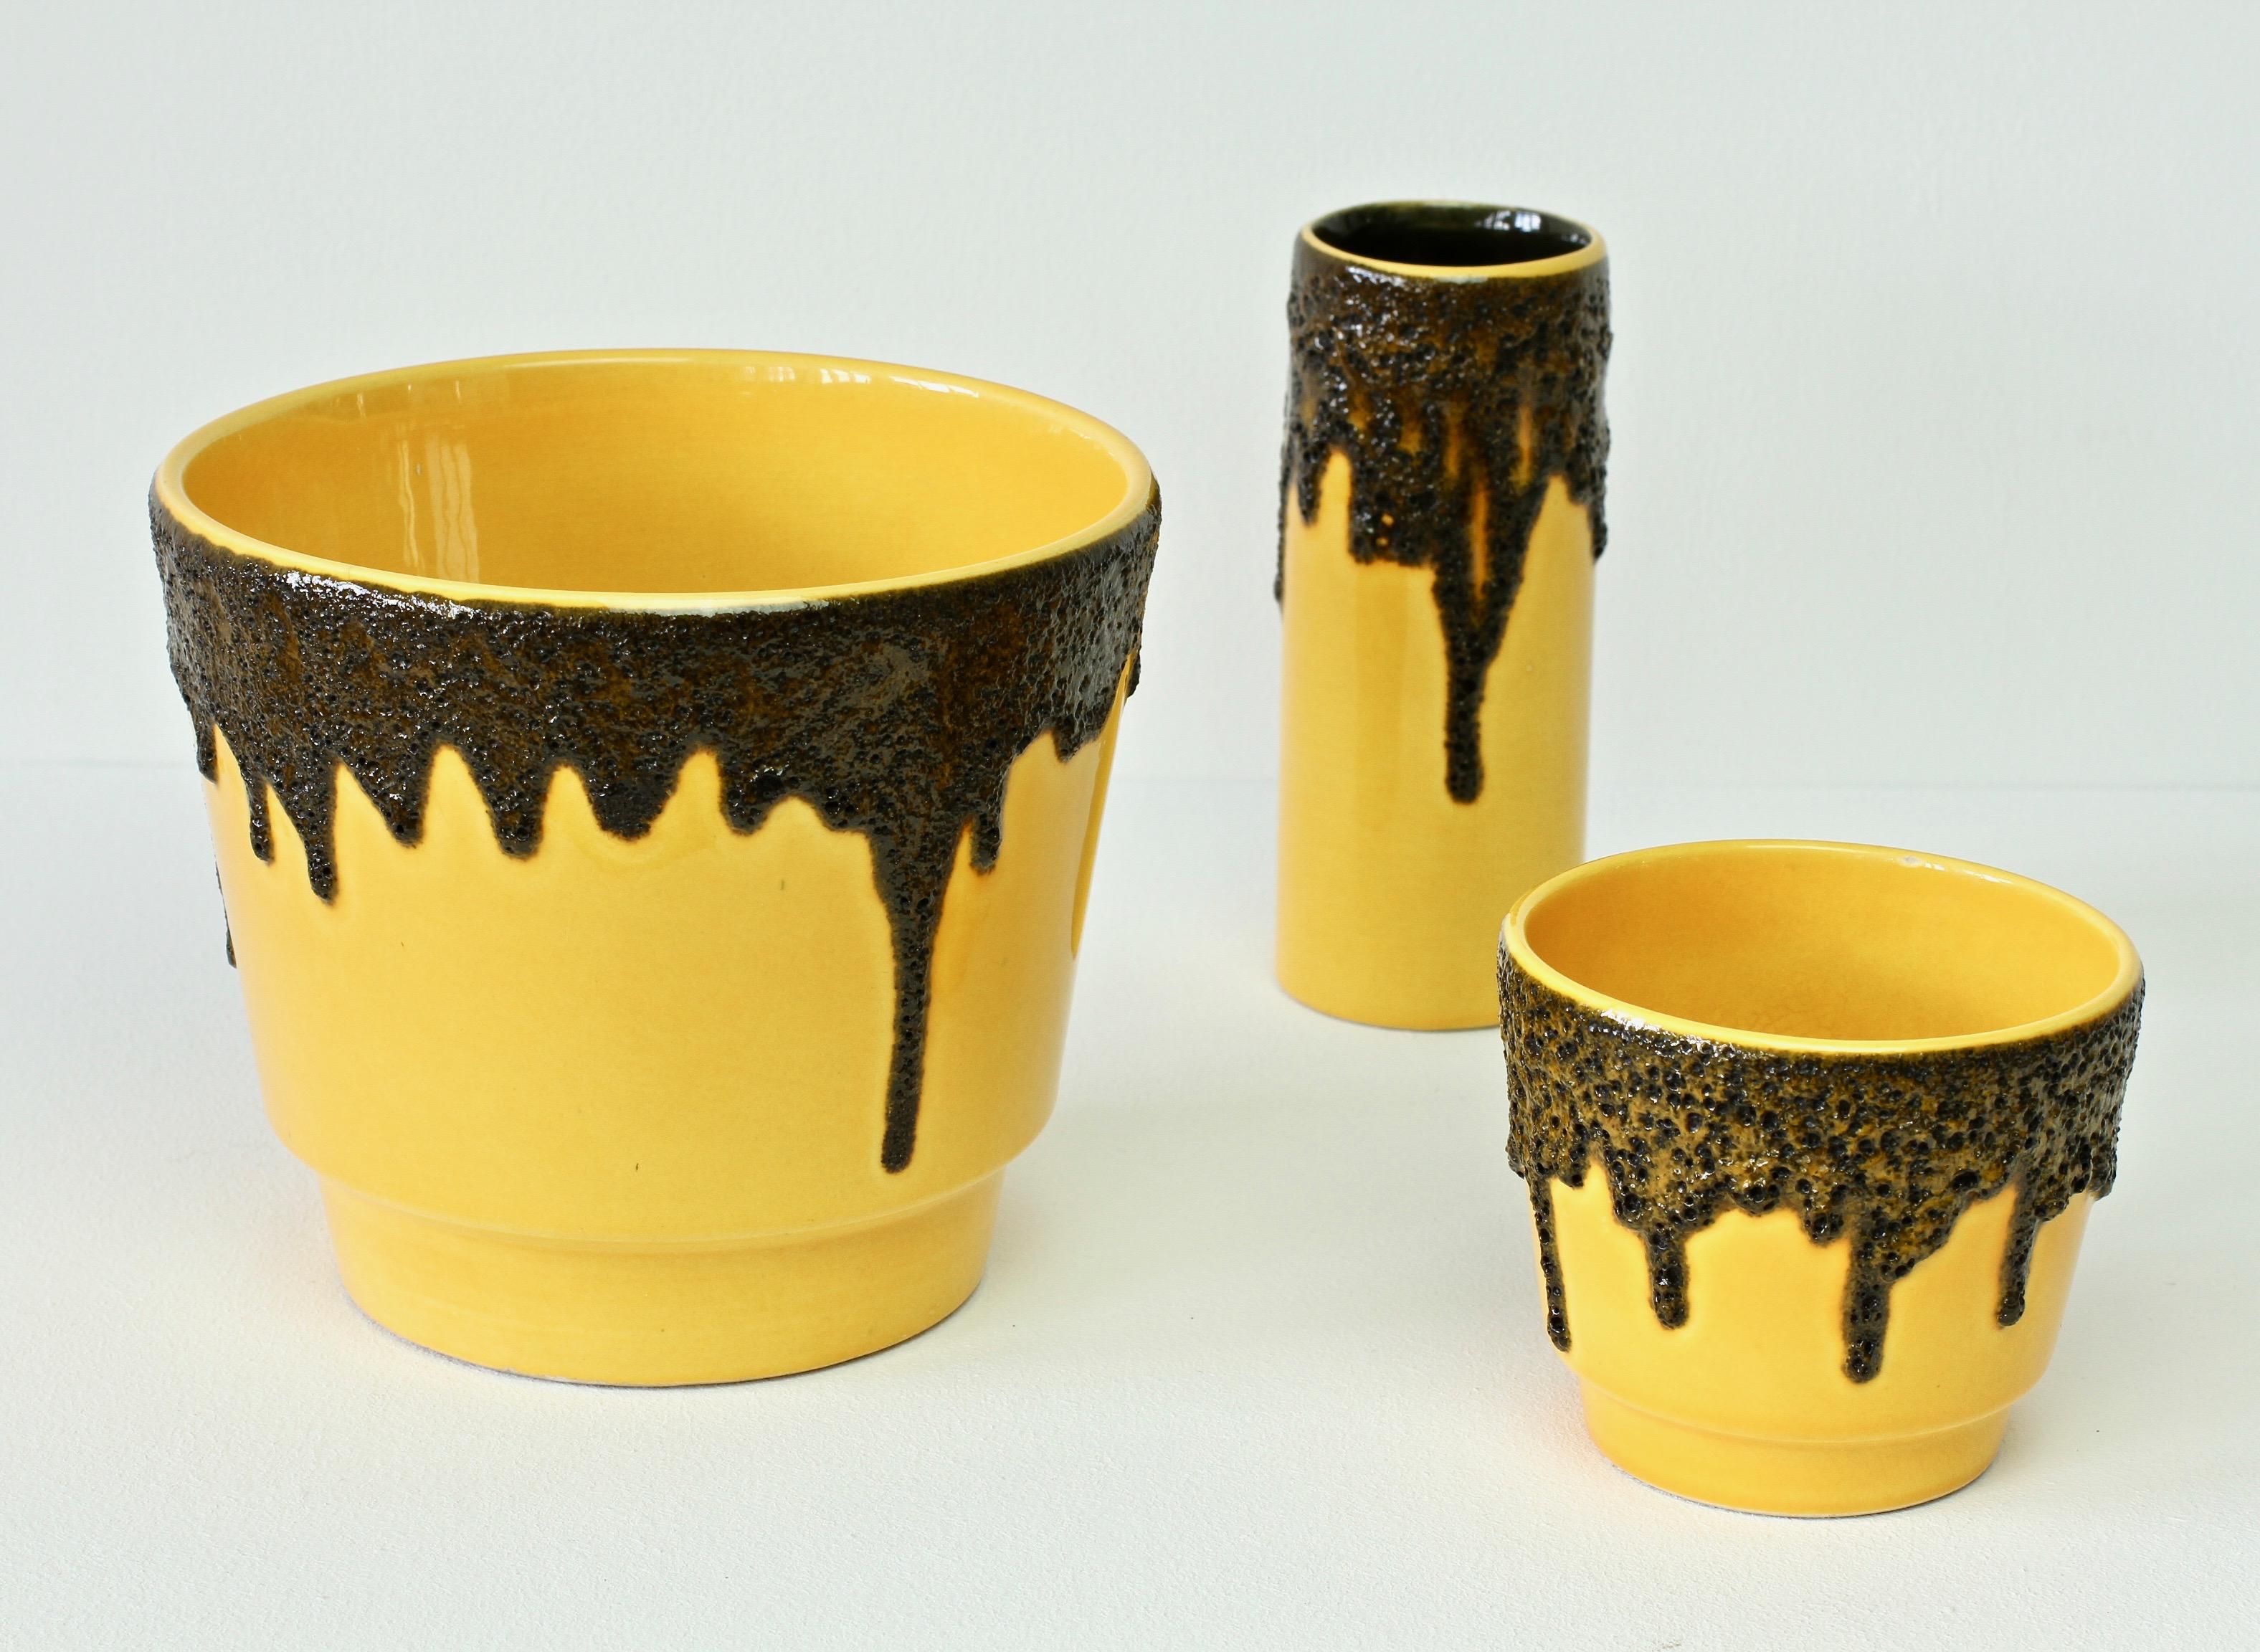 Westdeutsche Vintage-Vase mit schwarzer Lavaglasur, leuchtend gelb, 1970er Jahre (Moderne der Mitte des Jahrhunderts)